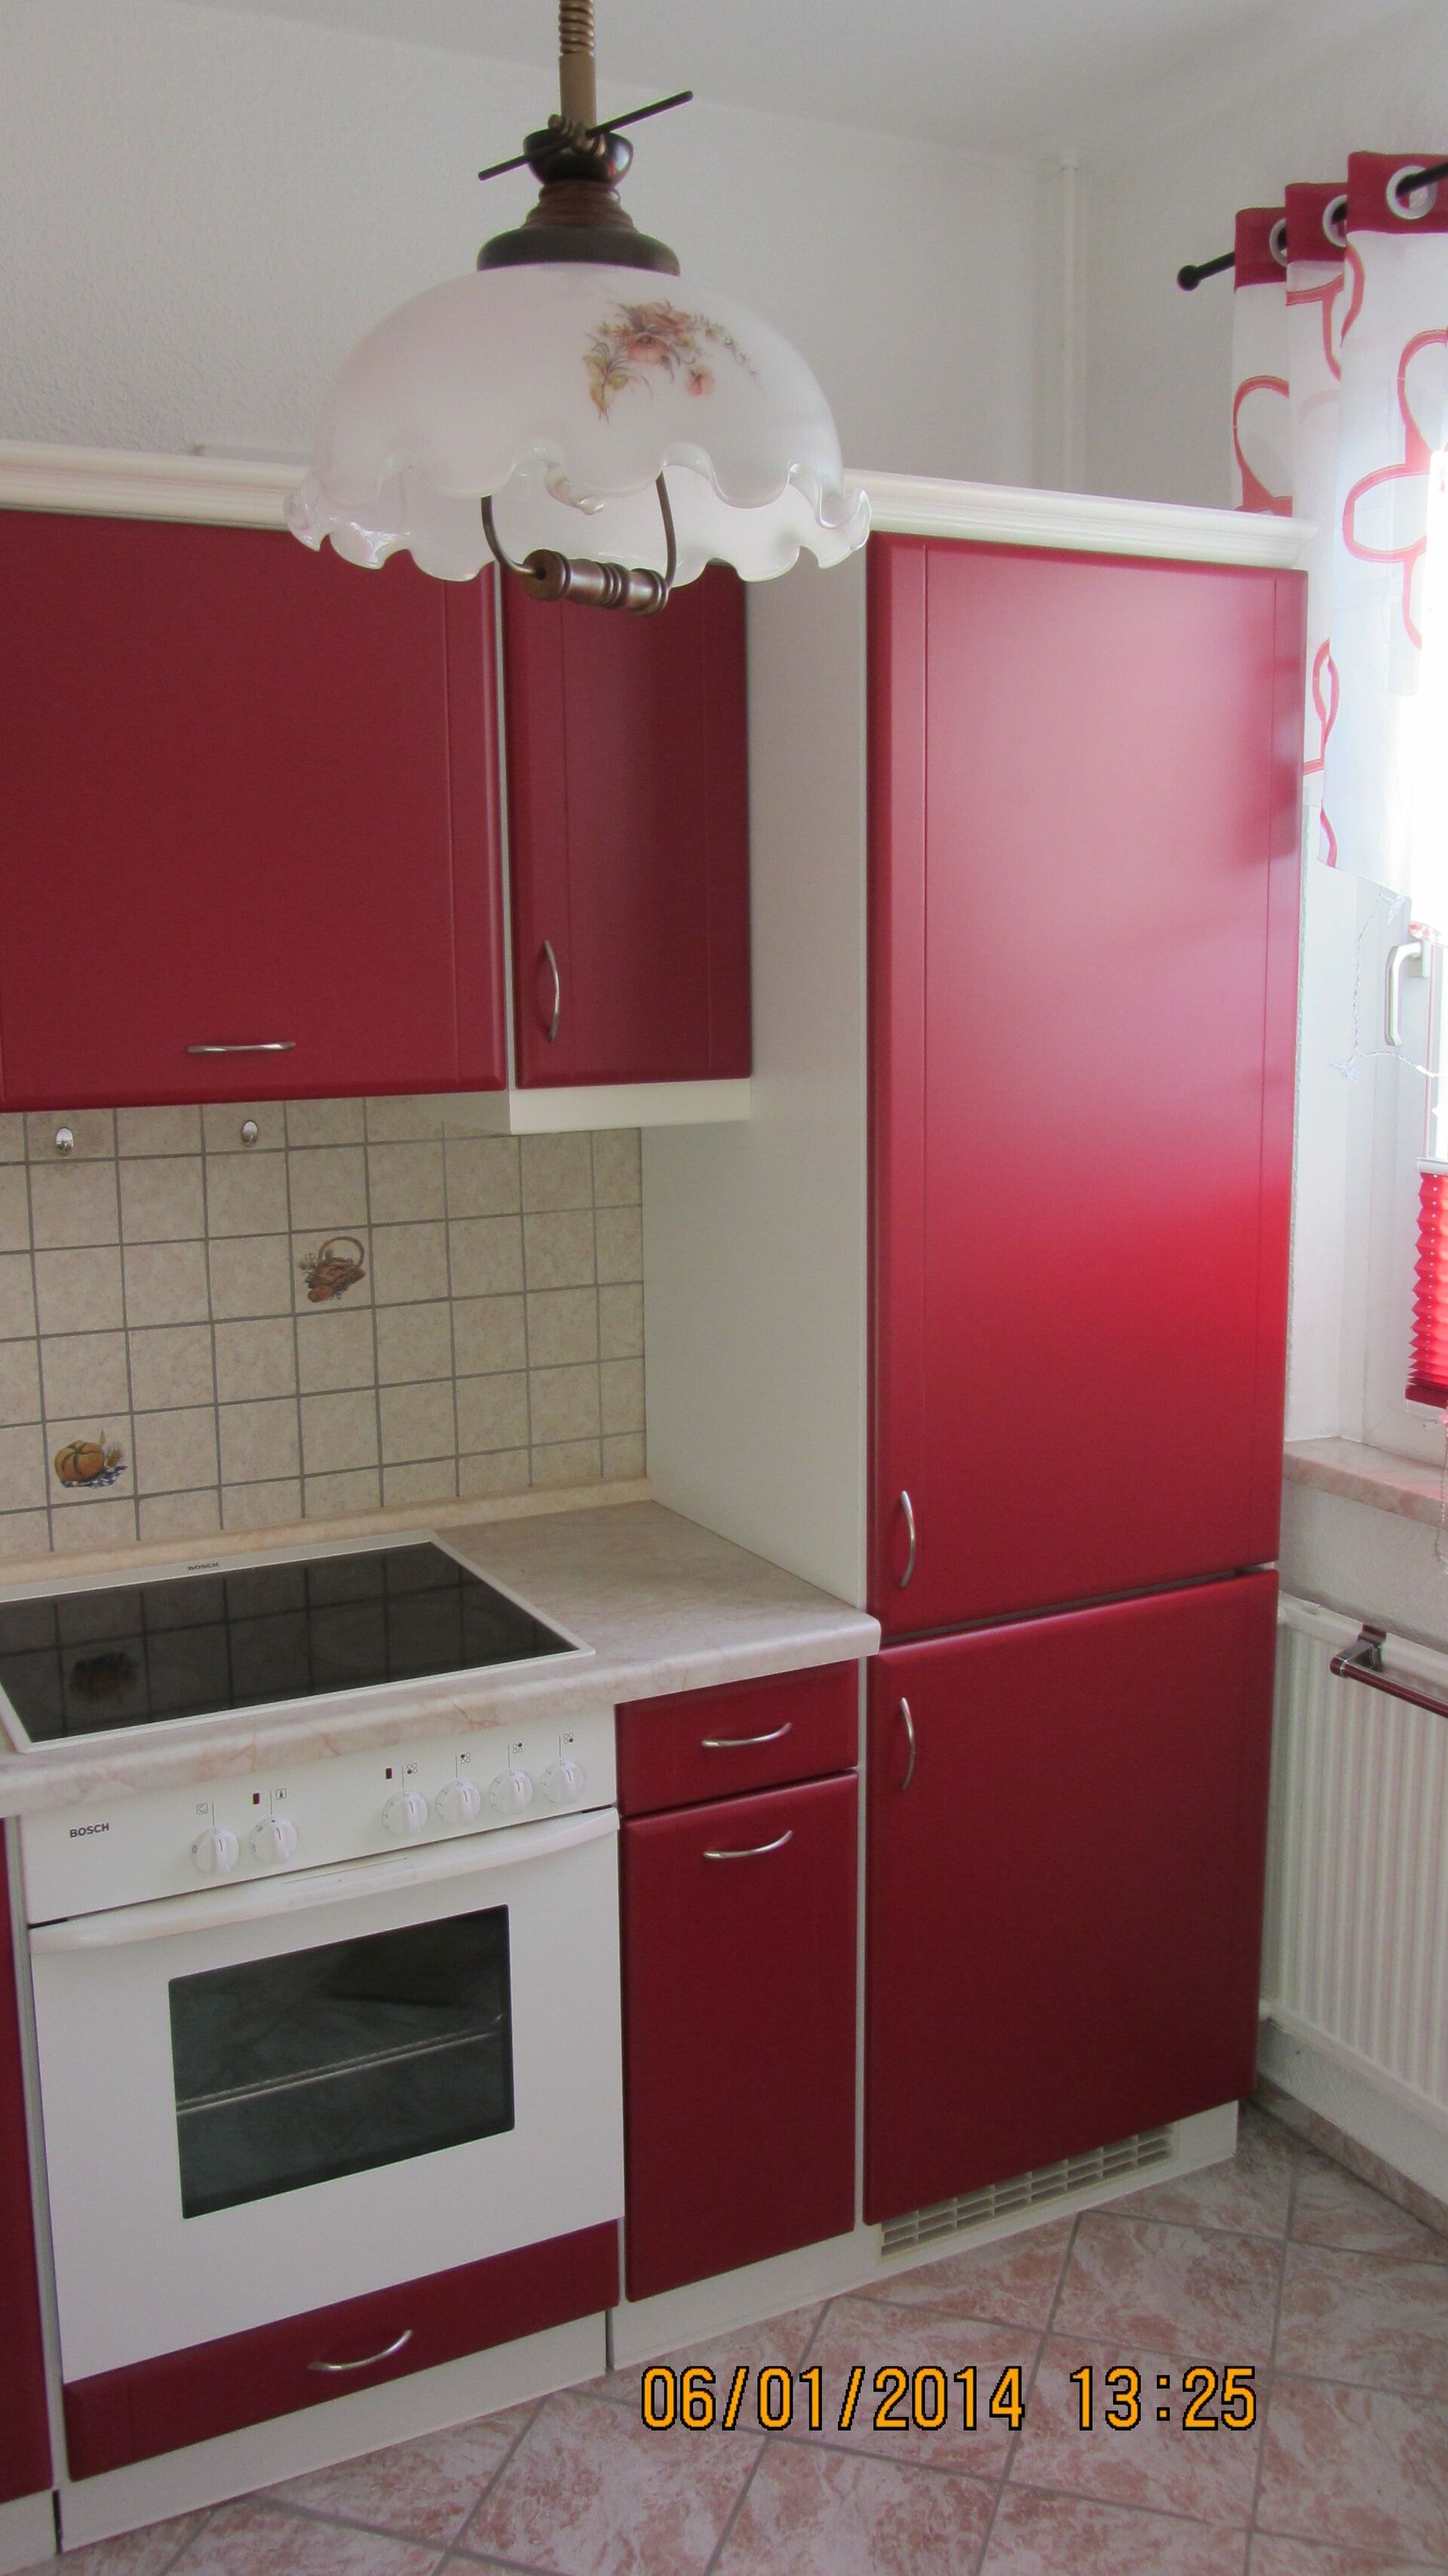 Küchenrenovierung aus den Großräumen Chemnitz, Grimma und Umgebung - Bild 3